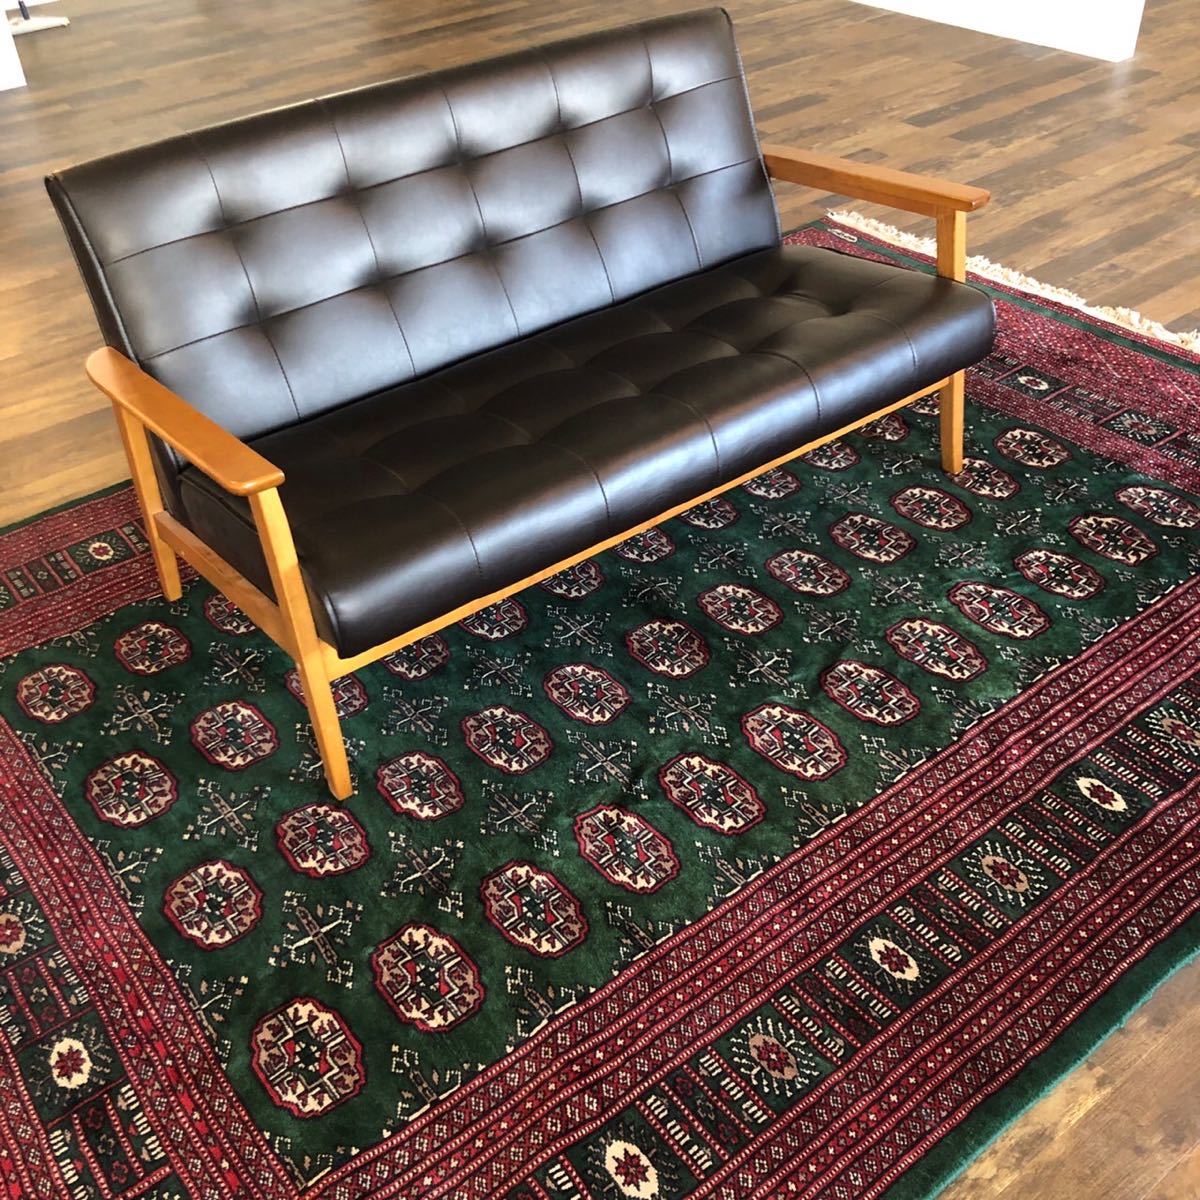 [Tamaño grande] alfombra persa Vintage americana de 282cm x 183cm alfombra tejida a mano hecha a mano, muebles, interior, alfombra, alfombra, estera, alfombra general